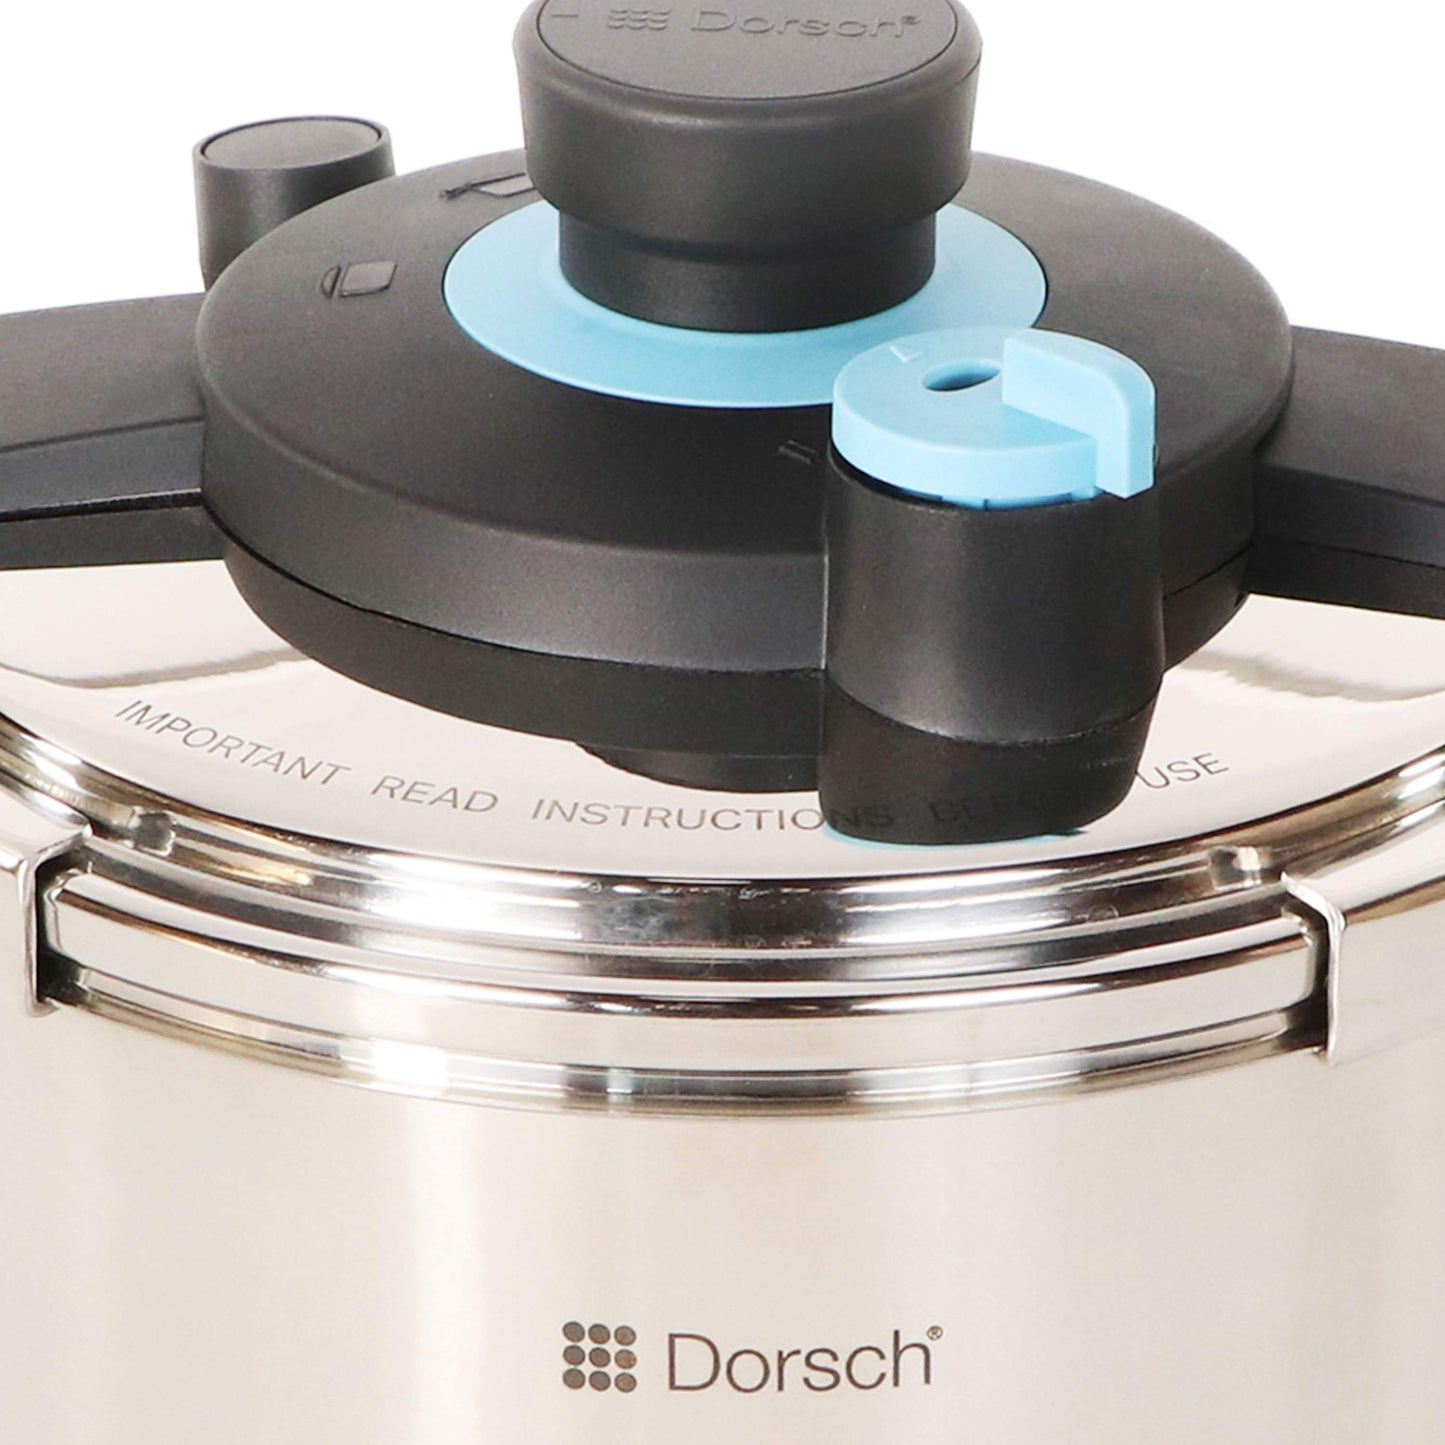 8L Dorsch GoPress Pressure Cooker-Royal Brands Co-